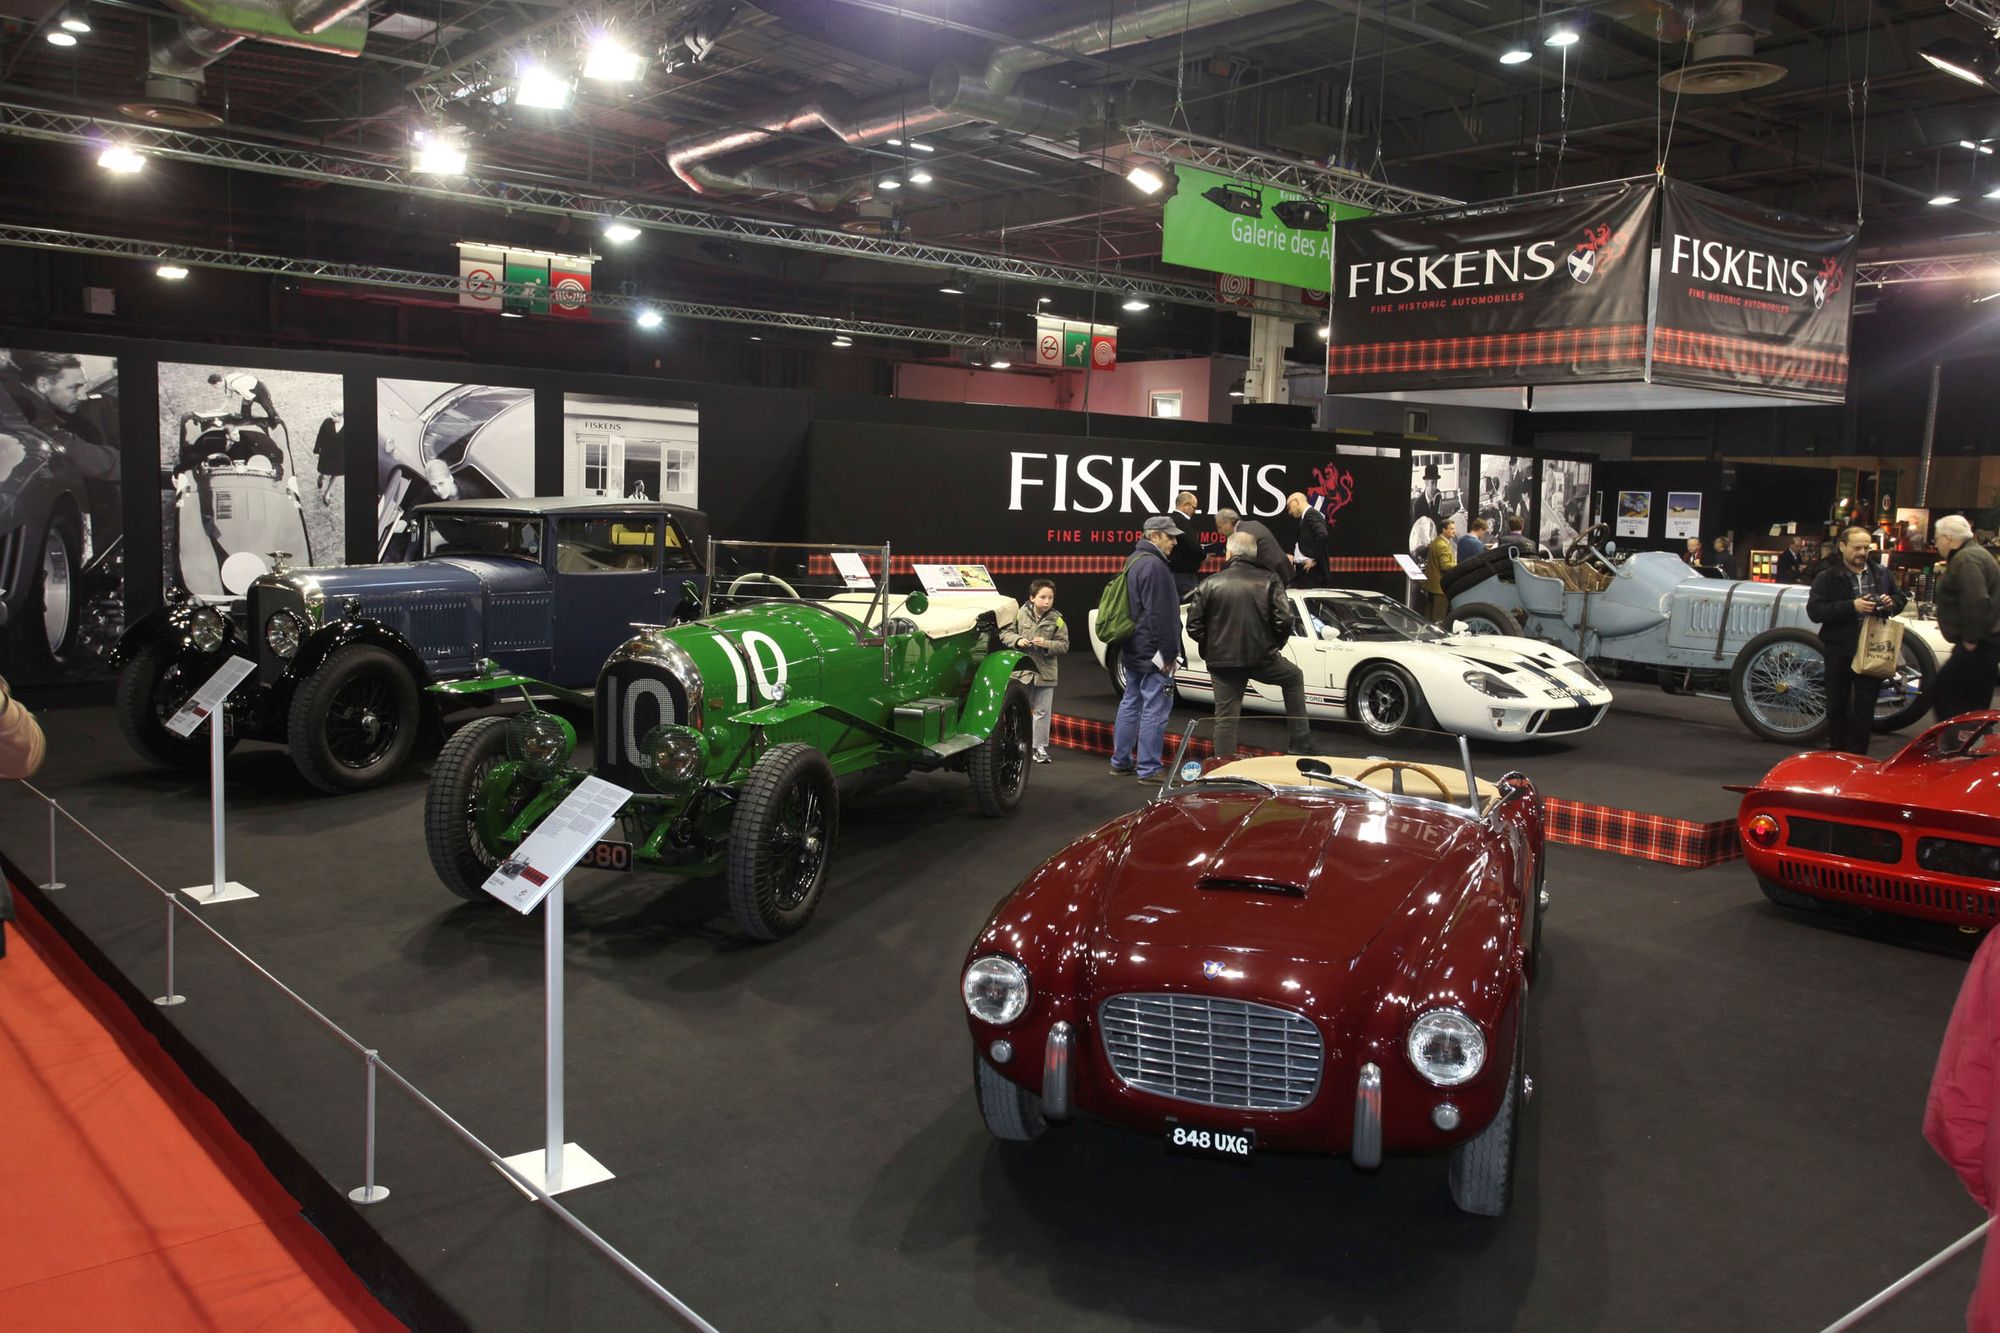 Fiskens expose une remarquable collection d’automobiles historiques a Retromobile